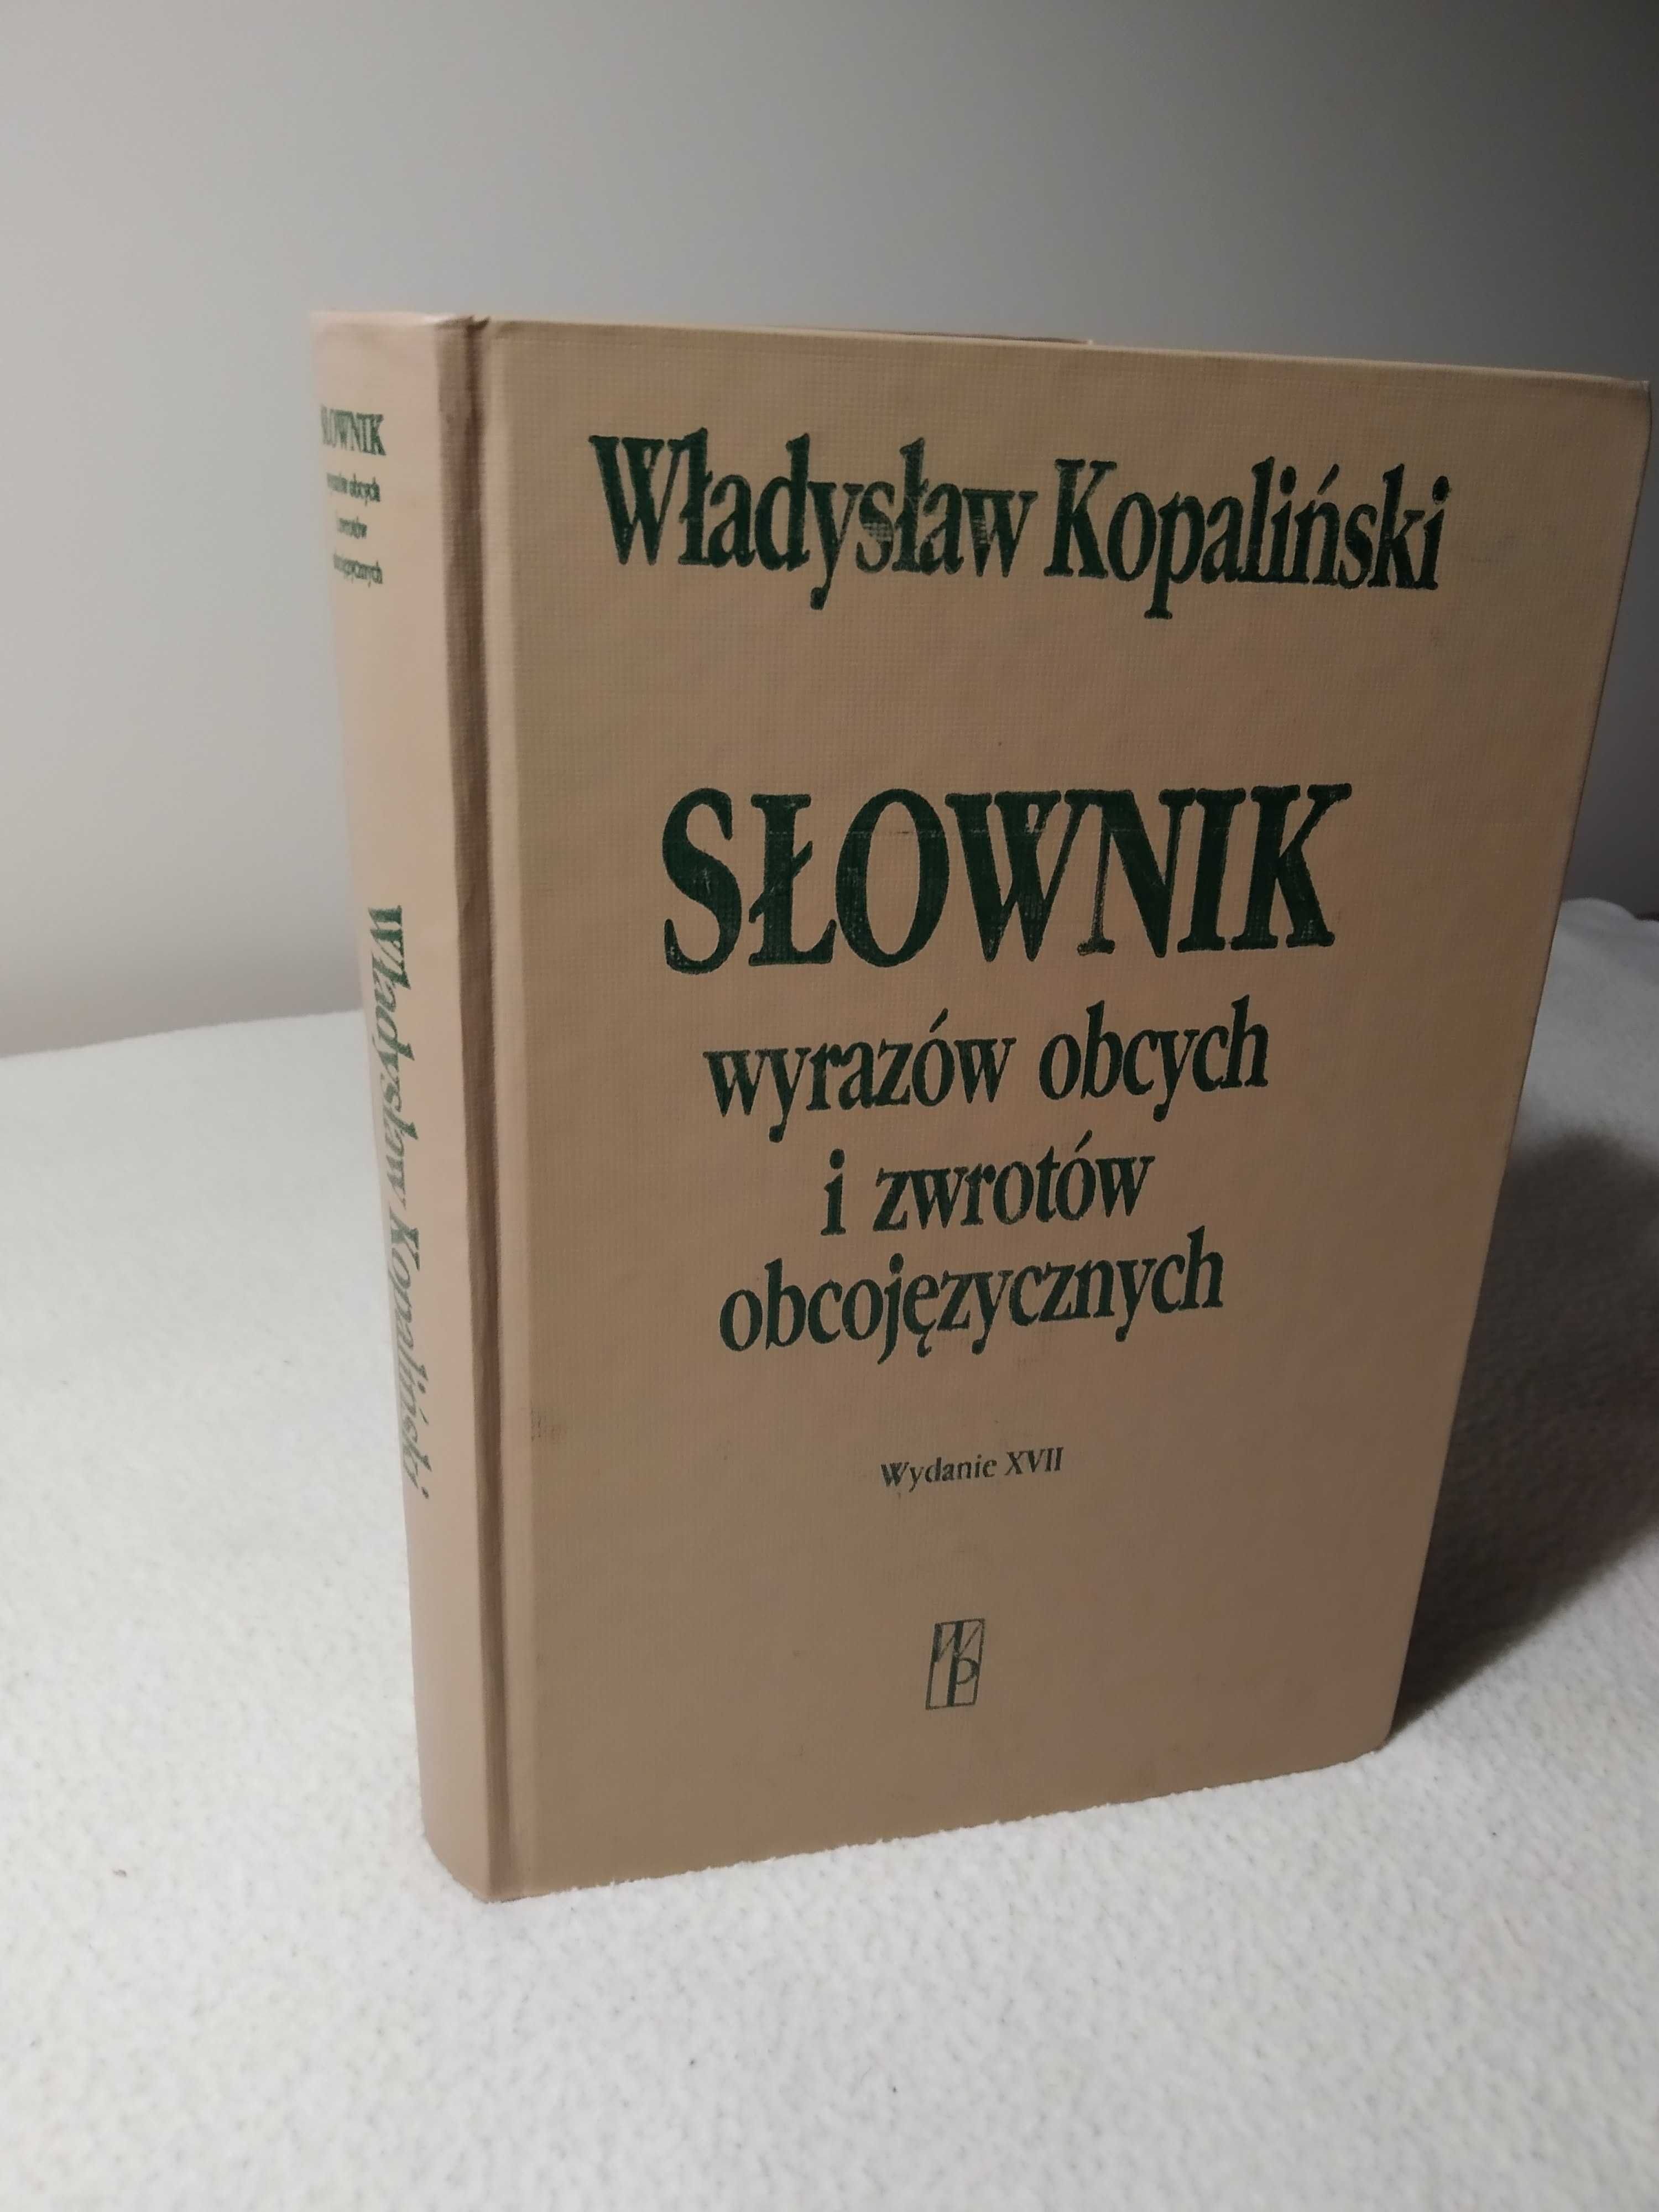 Słownik wyrazów obcych i zwrotów obcojęzycznych, Władysław Kopaliński.